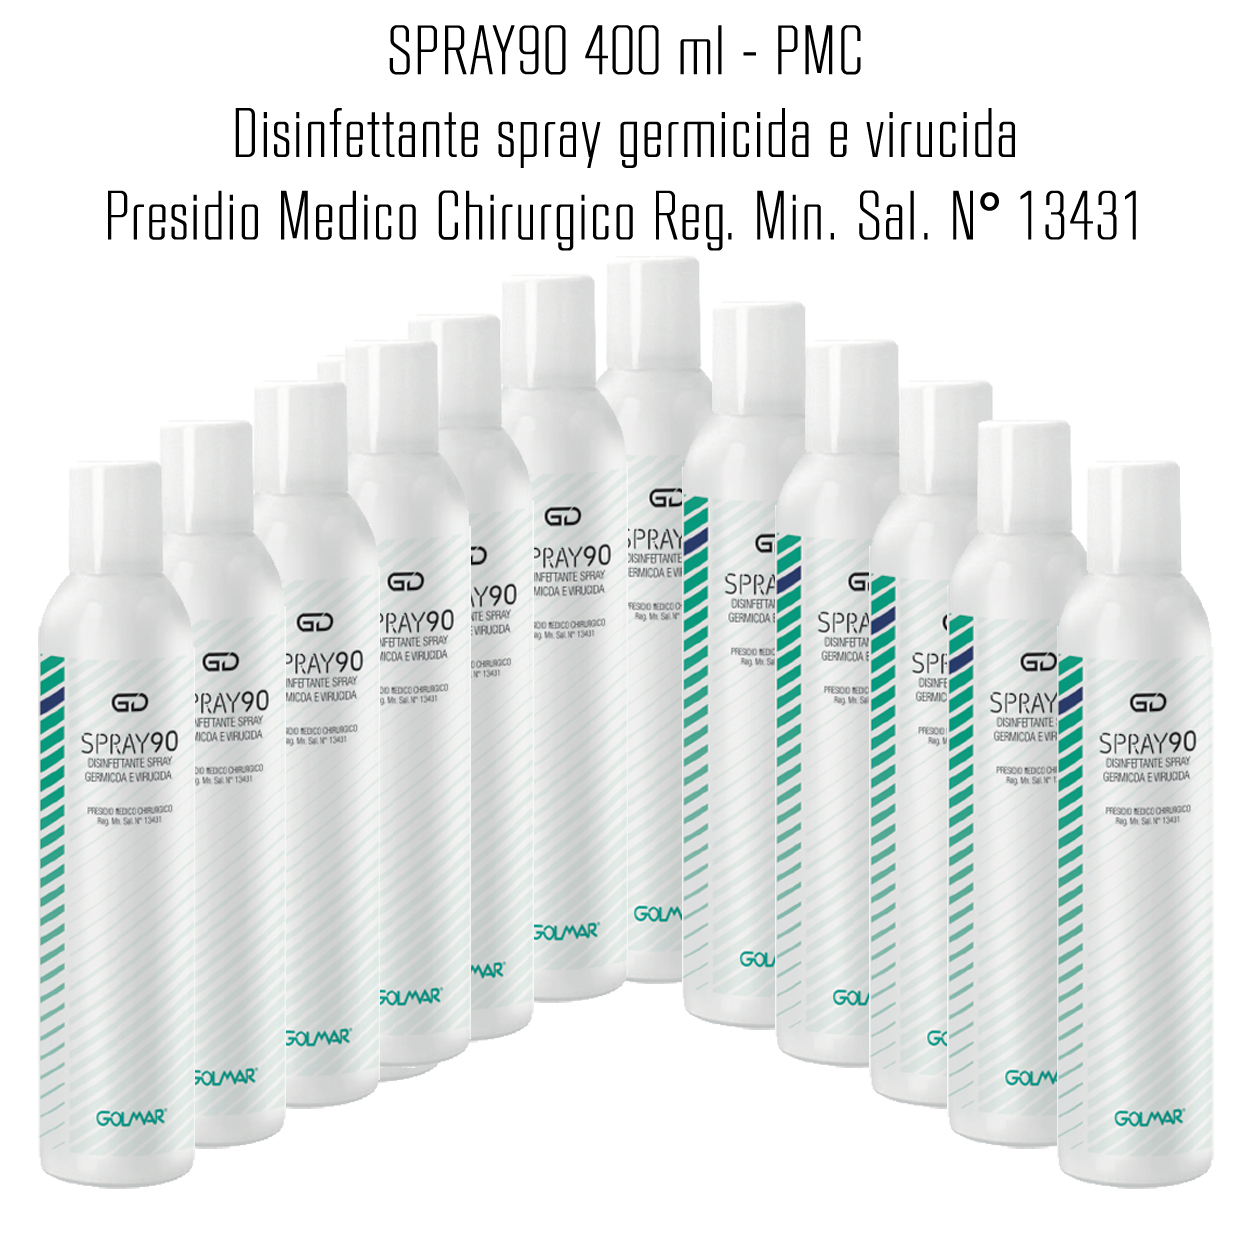 GOLMAR GD90 Spray 400 ml - PMC disinfettante professionale ad ampio spettro (virucida incluso famiglia Coronavirus, battericida e levuricida) - confezione da 12 Pz.